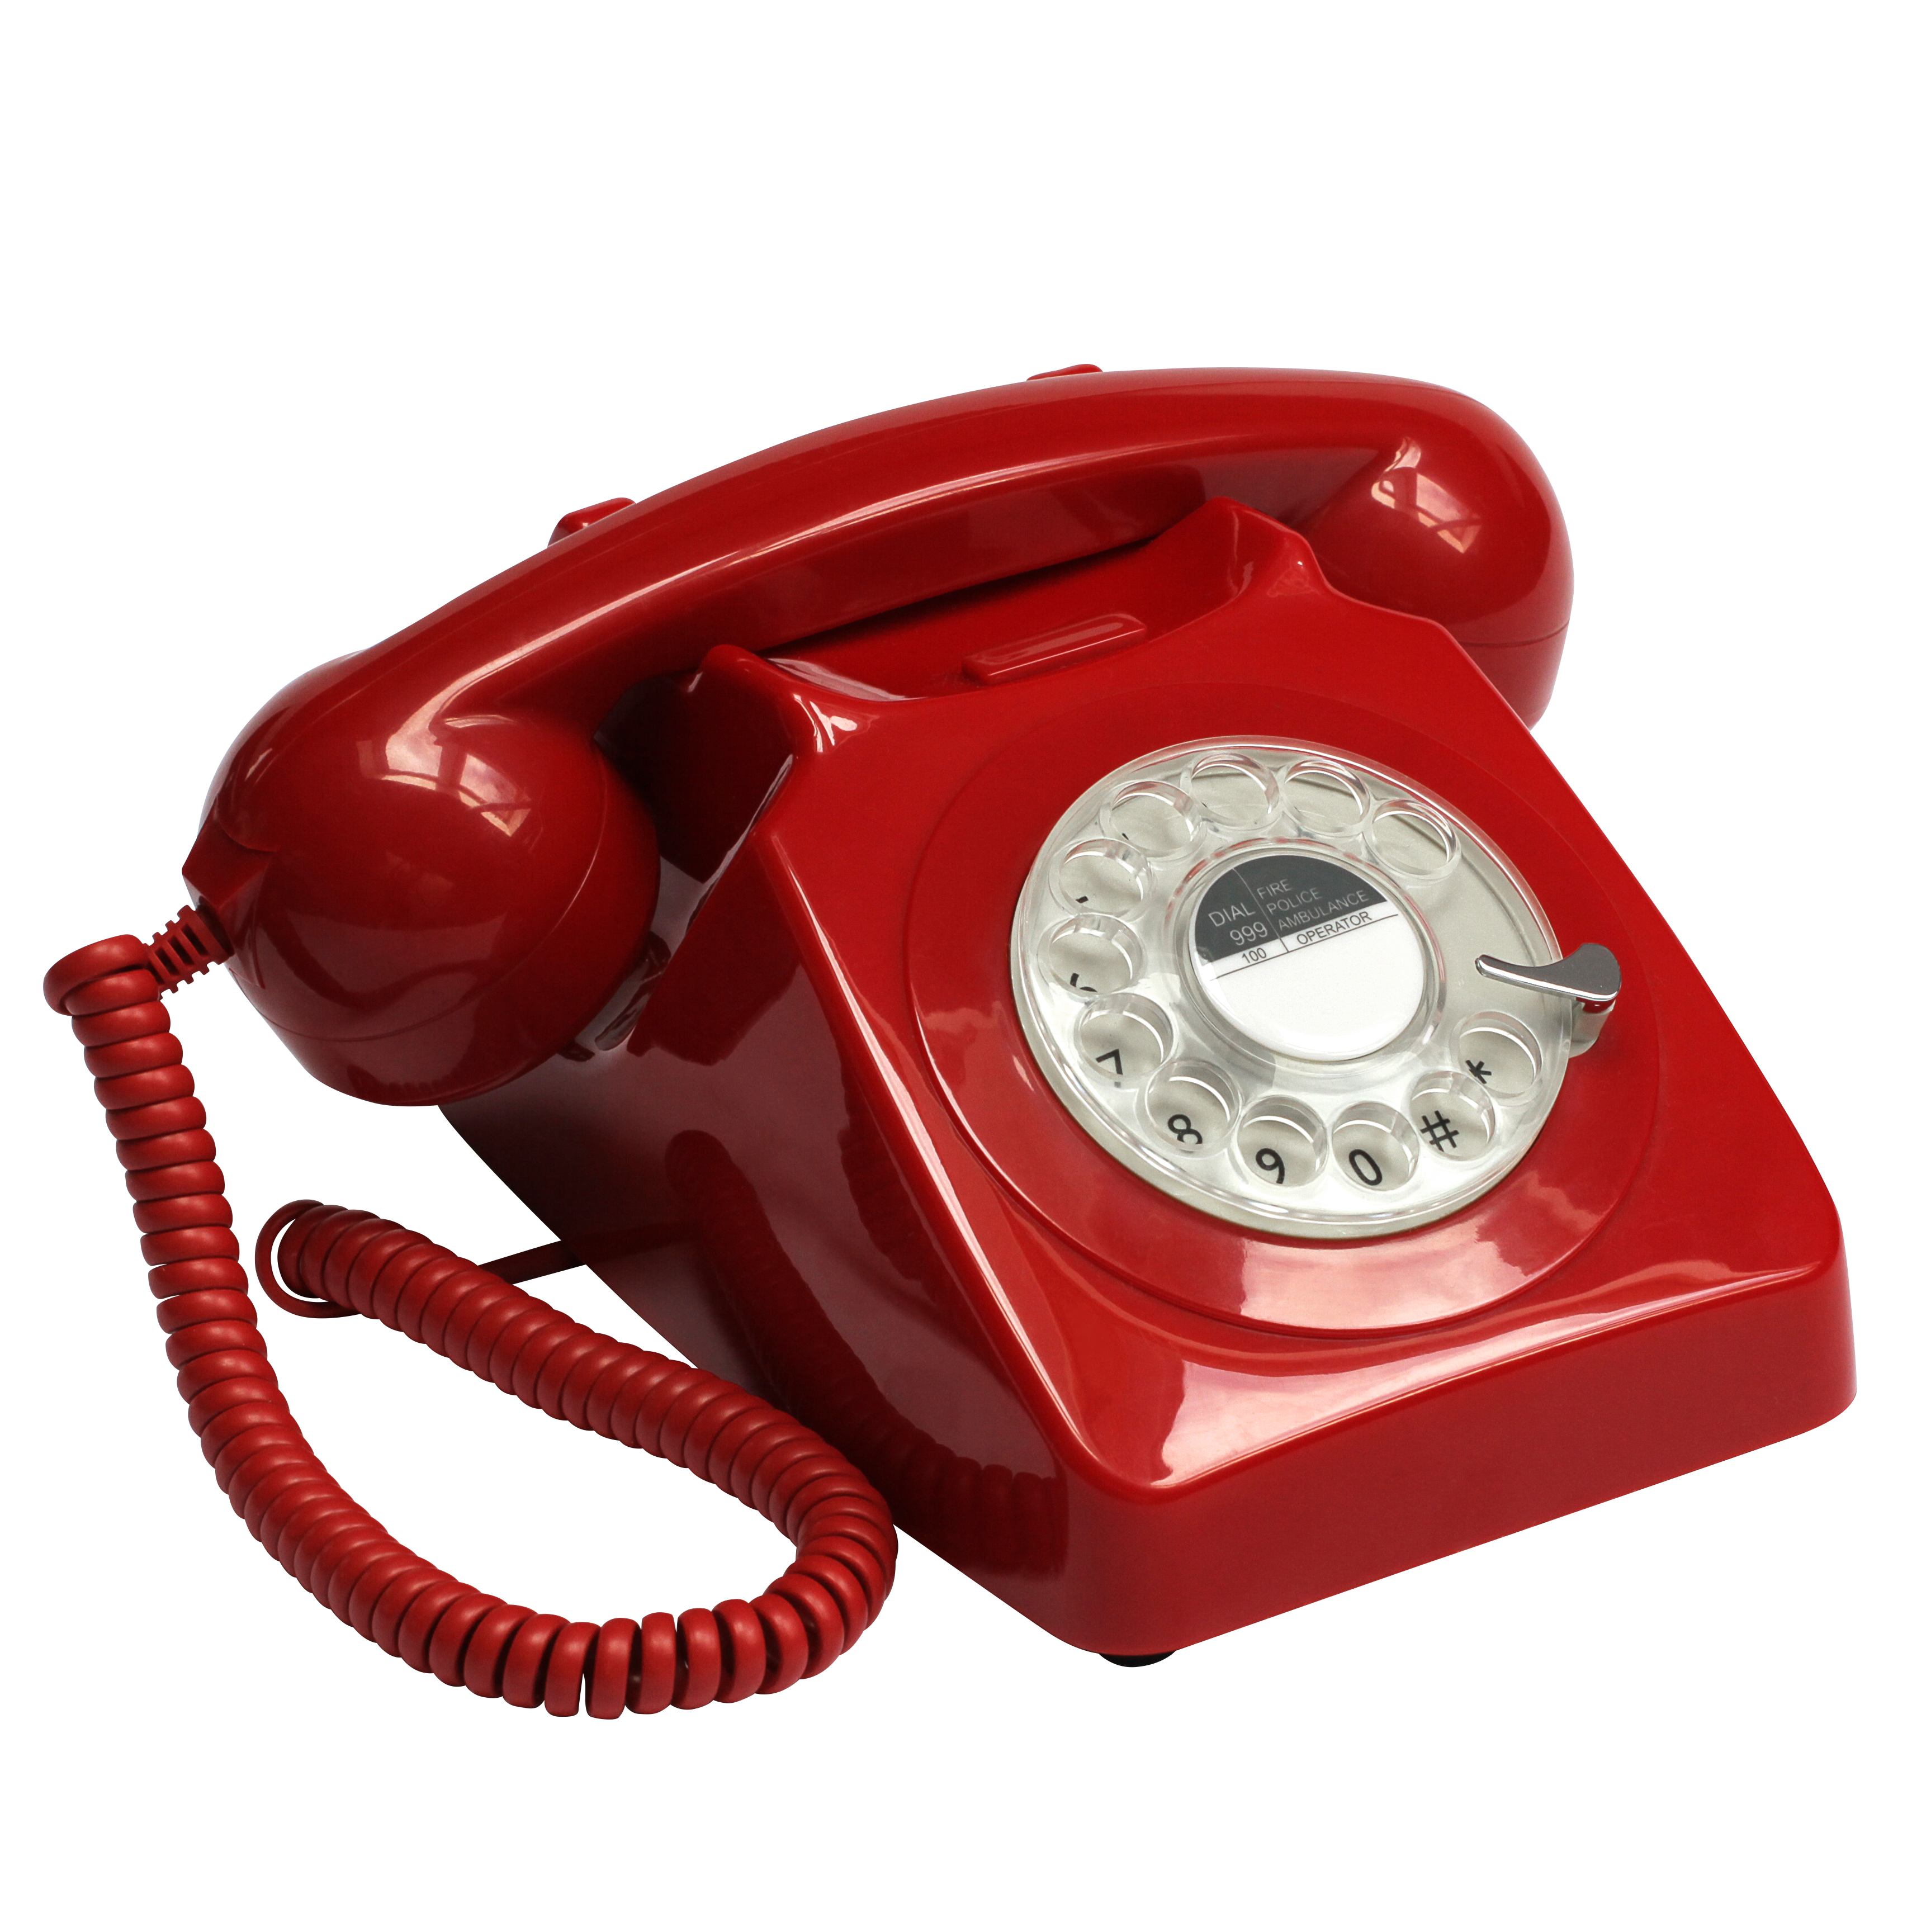 Телефон аппарат стационарный. Дисковый ретро телефон GPO 746 Rotary. GPO 746 Rotary. Телефон дисковый в стиле ретро GPO 746 Rotary Red. Домашний телефон.